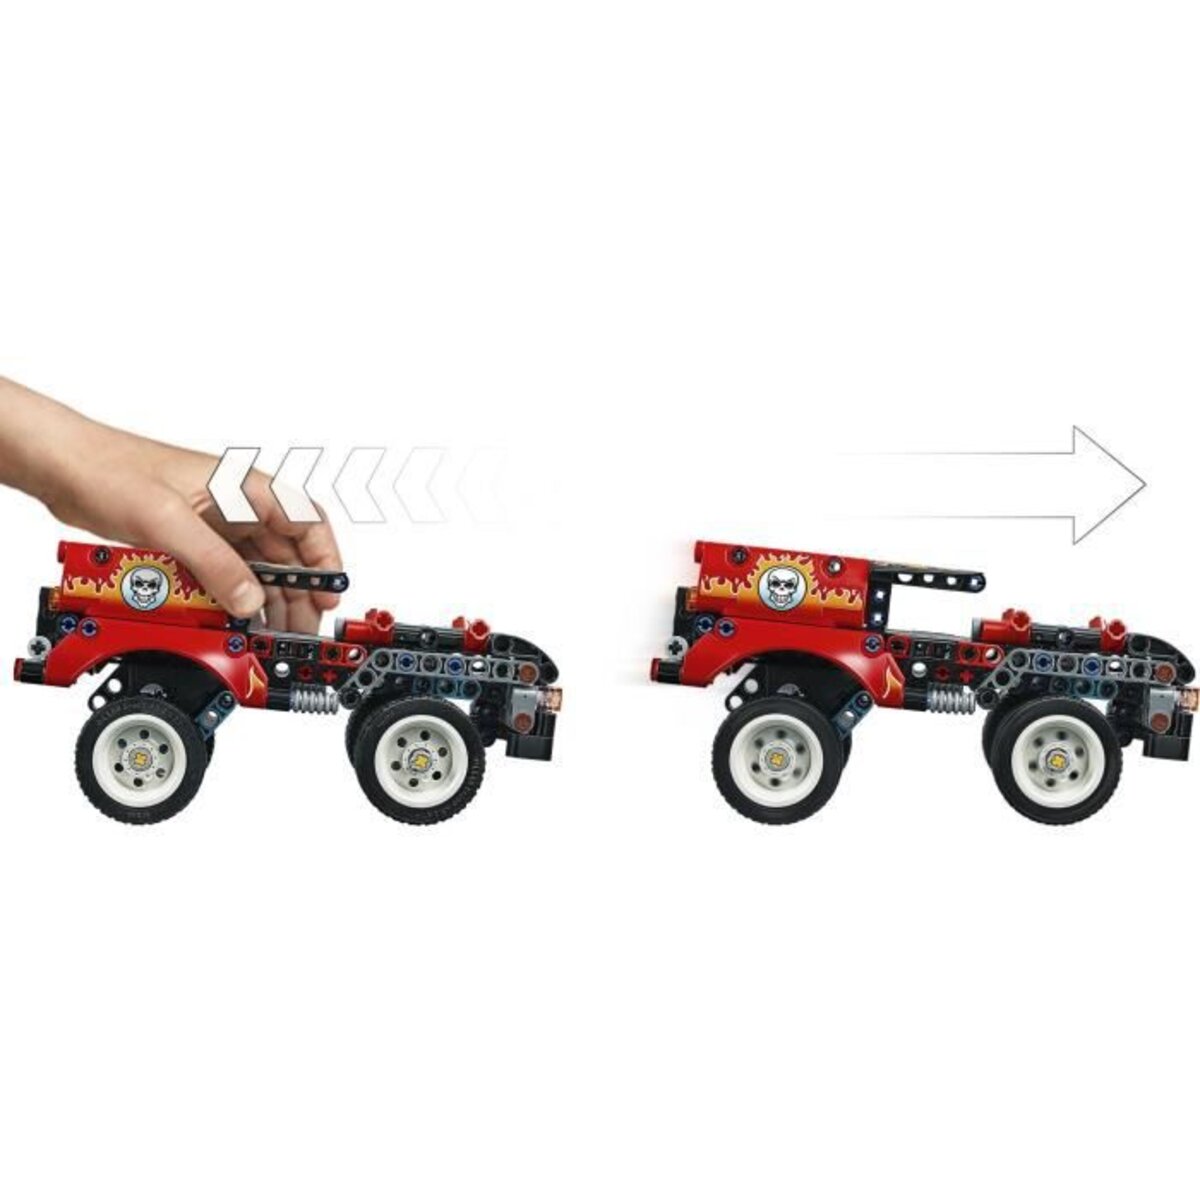 LEGO Technic - Le Spectacle de Cascades du Camion et de la Moto - 42106 -  En stock chez